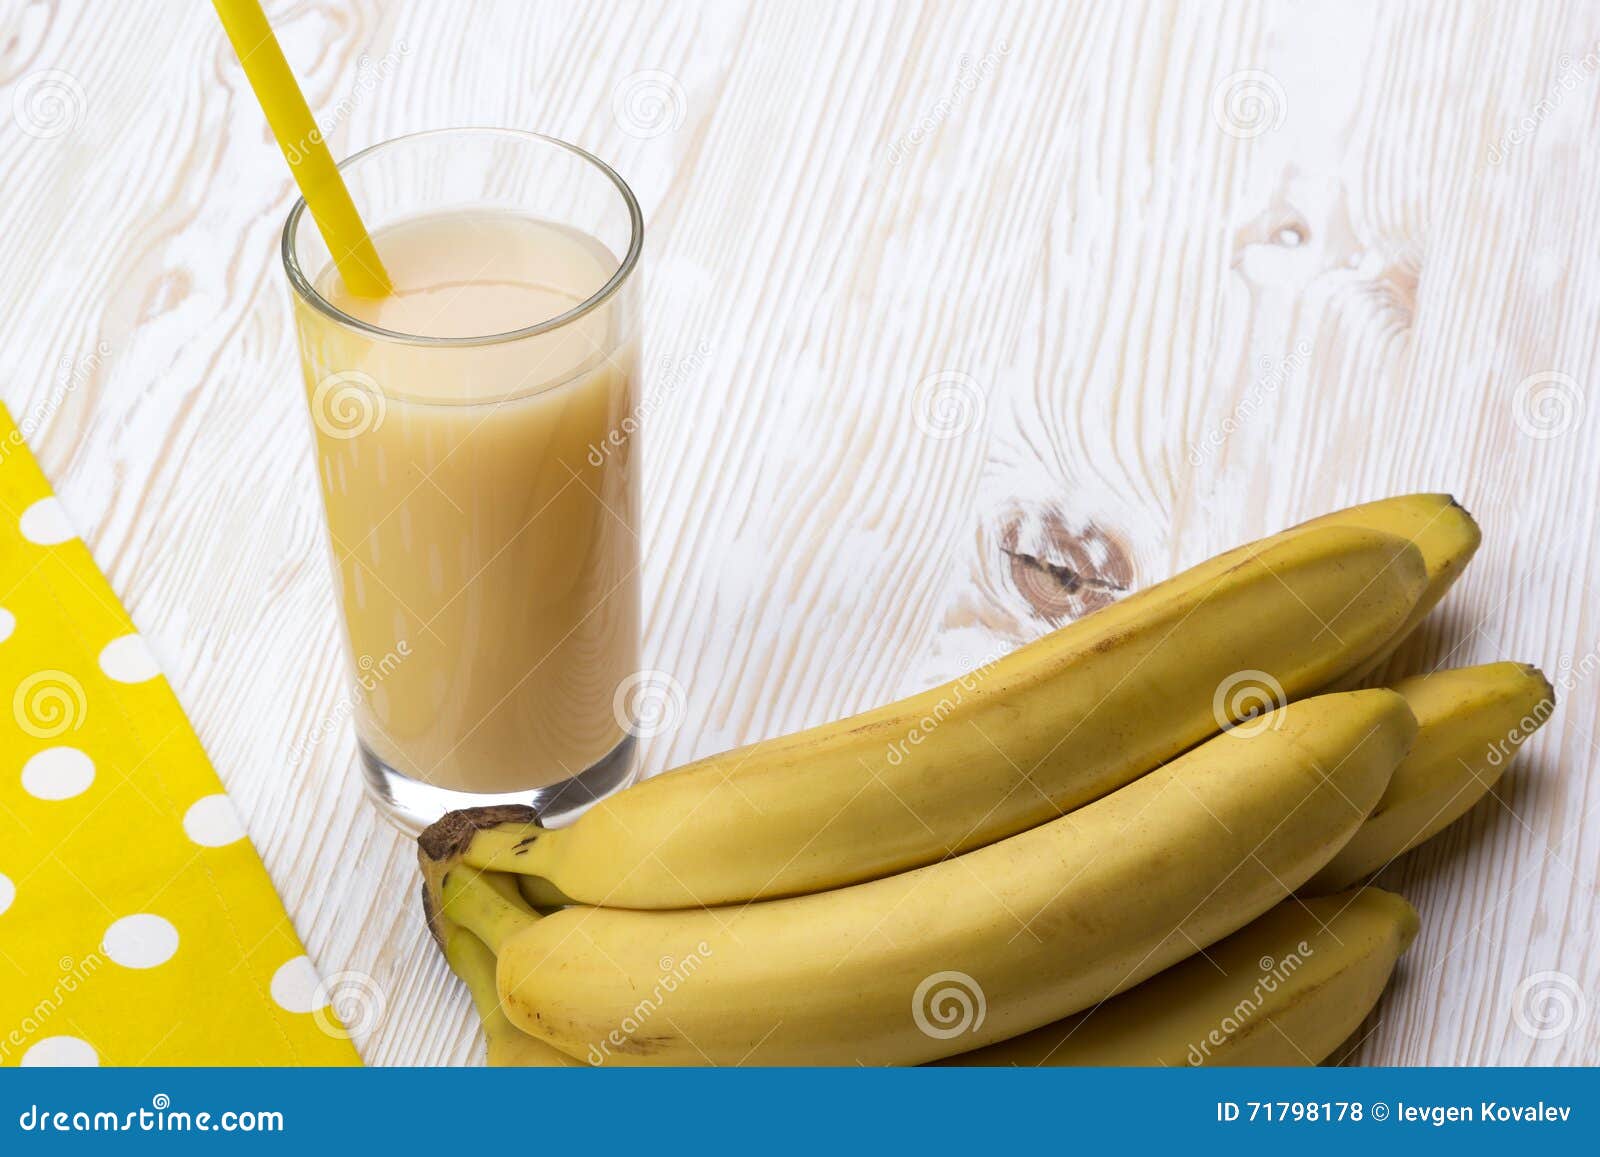 【食譜】香蕉鳳梨蕃茄汁:www.ytower.com.tw